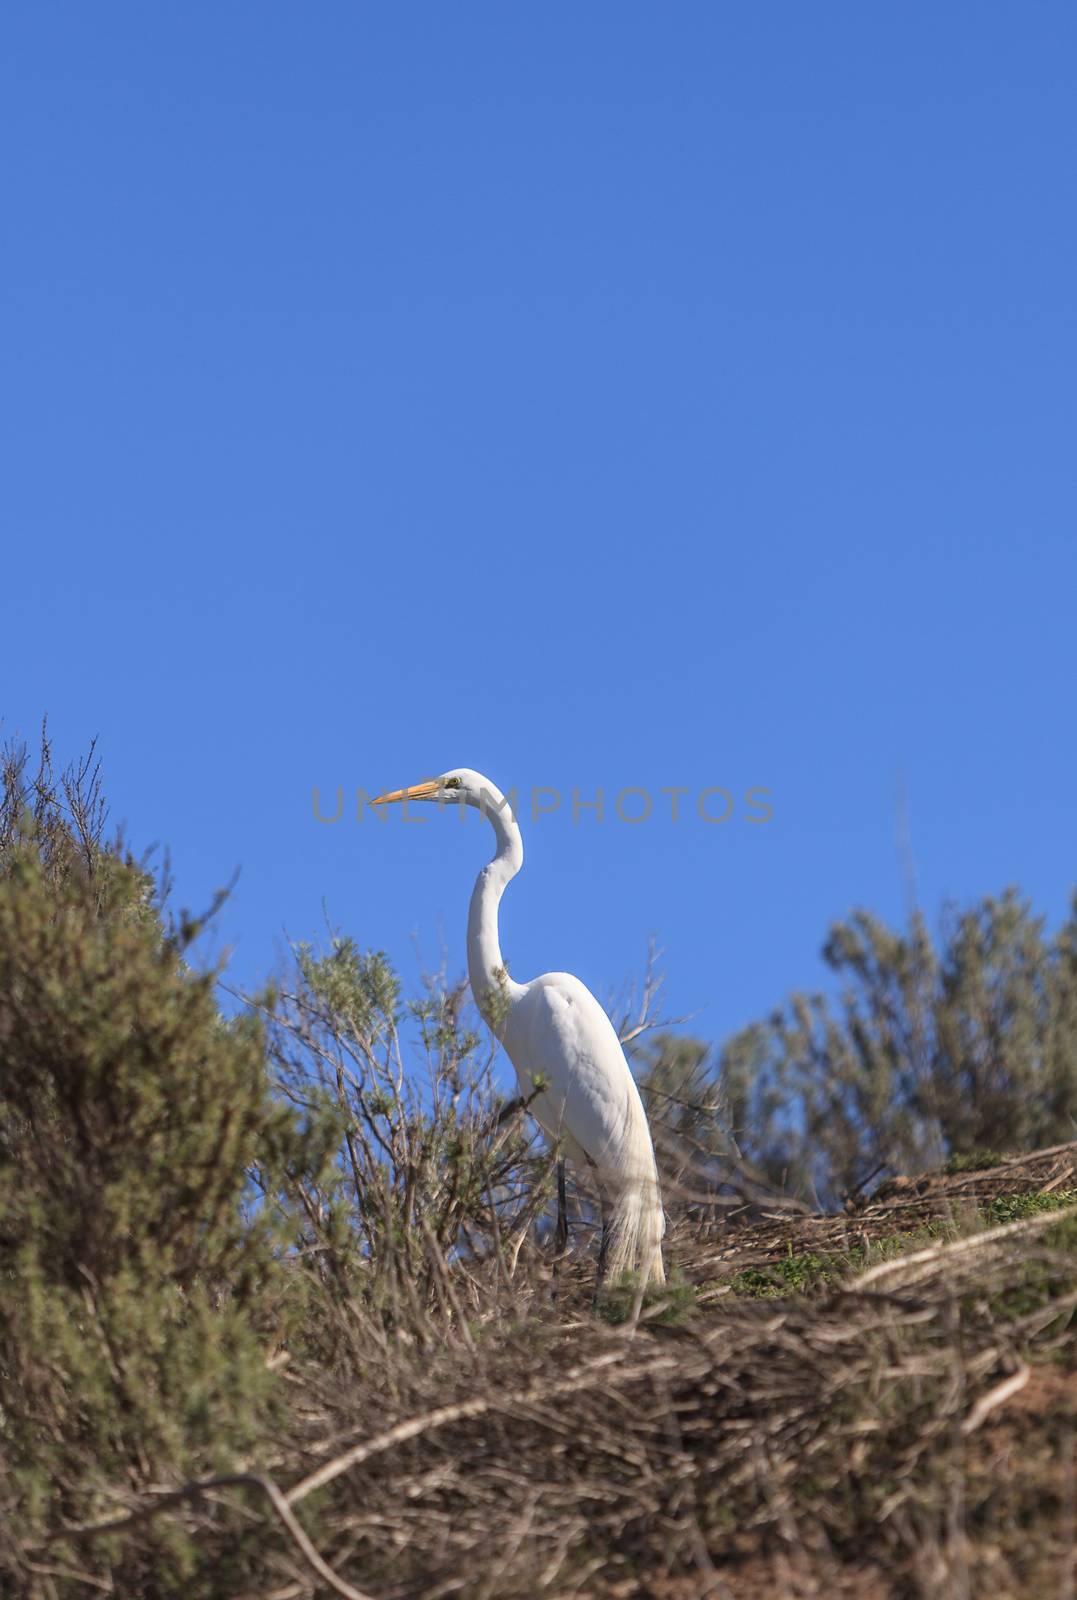 Great egret bird by steffstarr